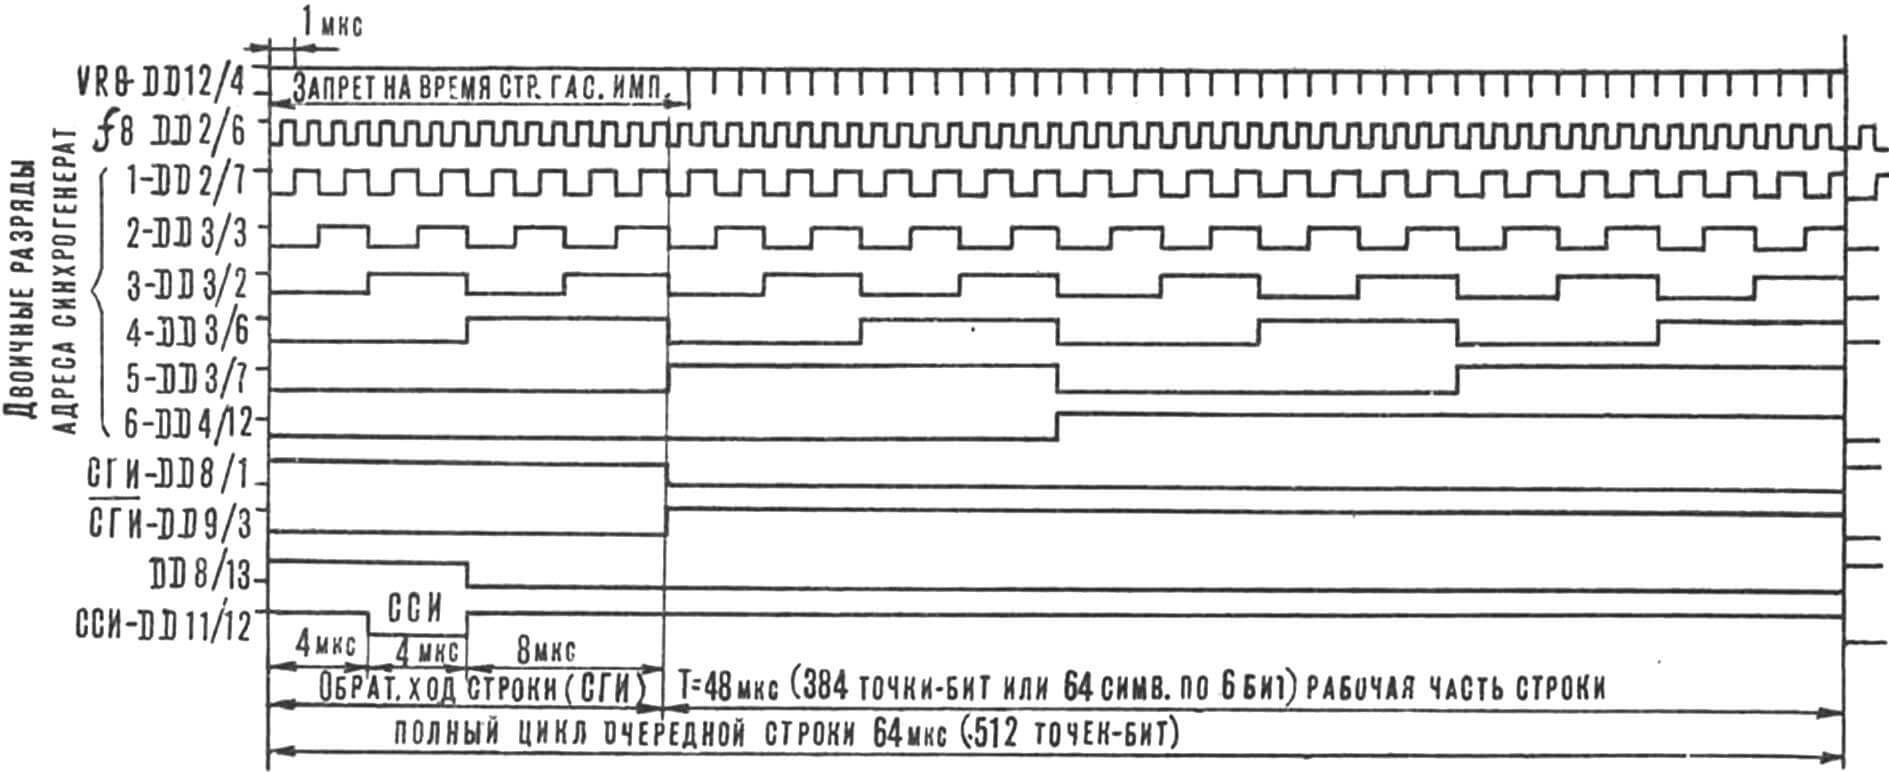 Рис. 4. Диаграмма работы счетчика элементов-точек в строке на экране дисплея. Формирование строчных гасящих и синхронизирующих синхроимпульсов ССИ и сги.